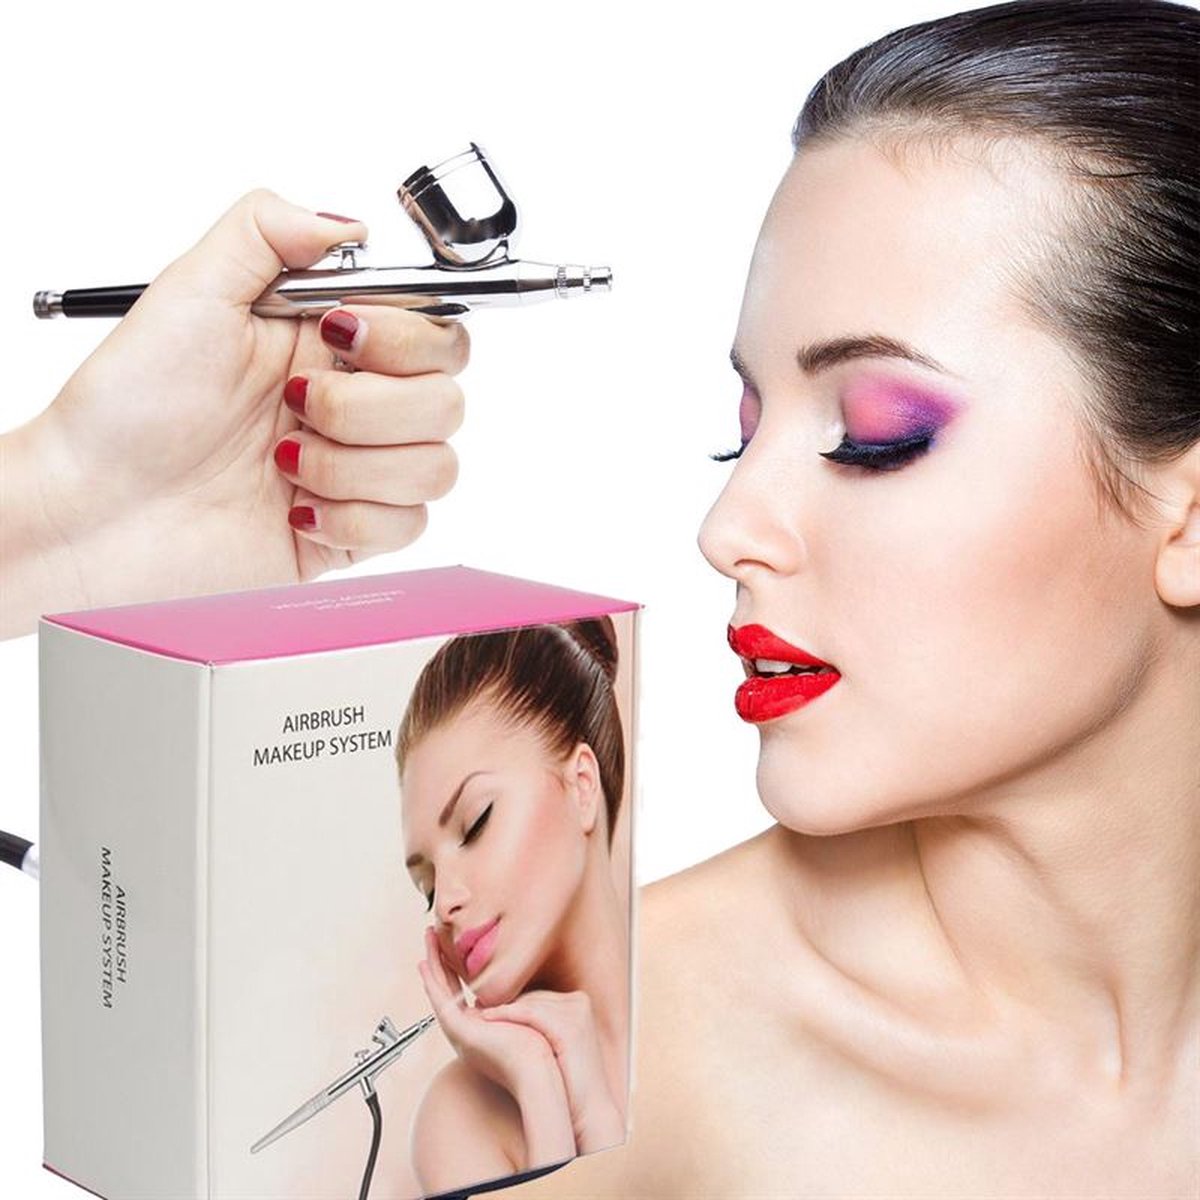 Airbrush Makeup Startset - Cosmetica - Makeup - Oogschaduw, foundation, blush en contoure - Makeup tool